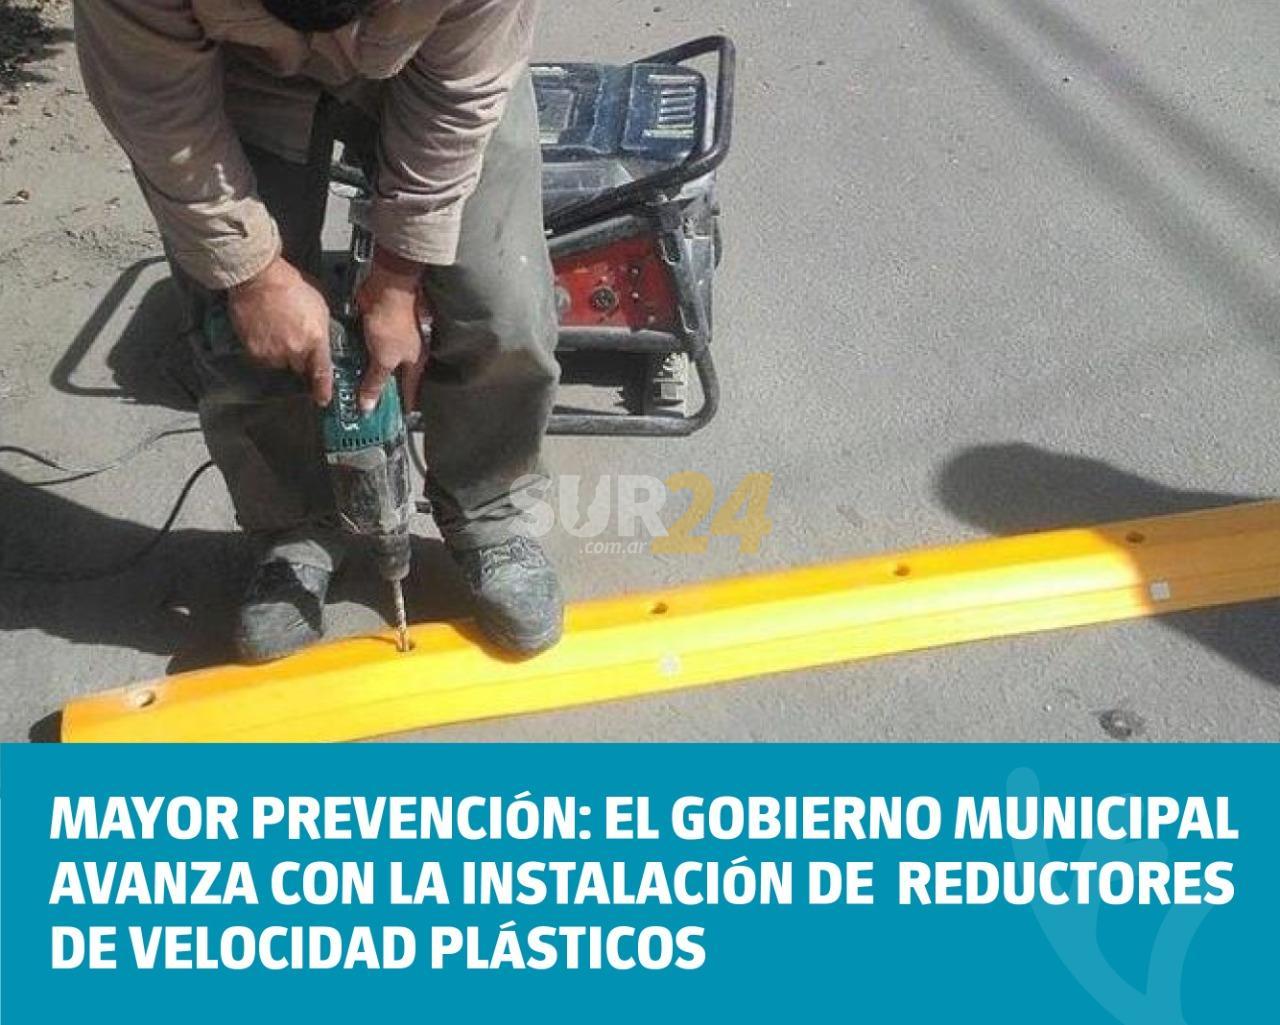 El Gobierno Municipal avanza con la instalación de reductores de velocidad plásticos